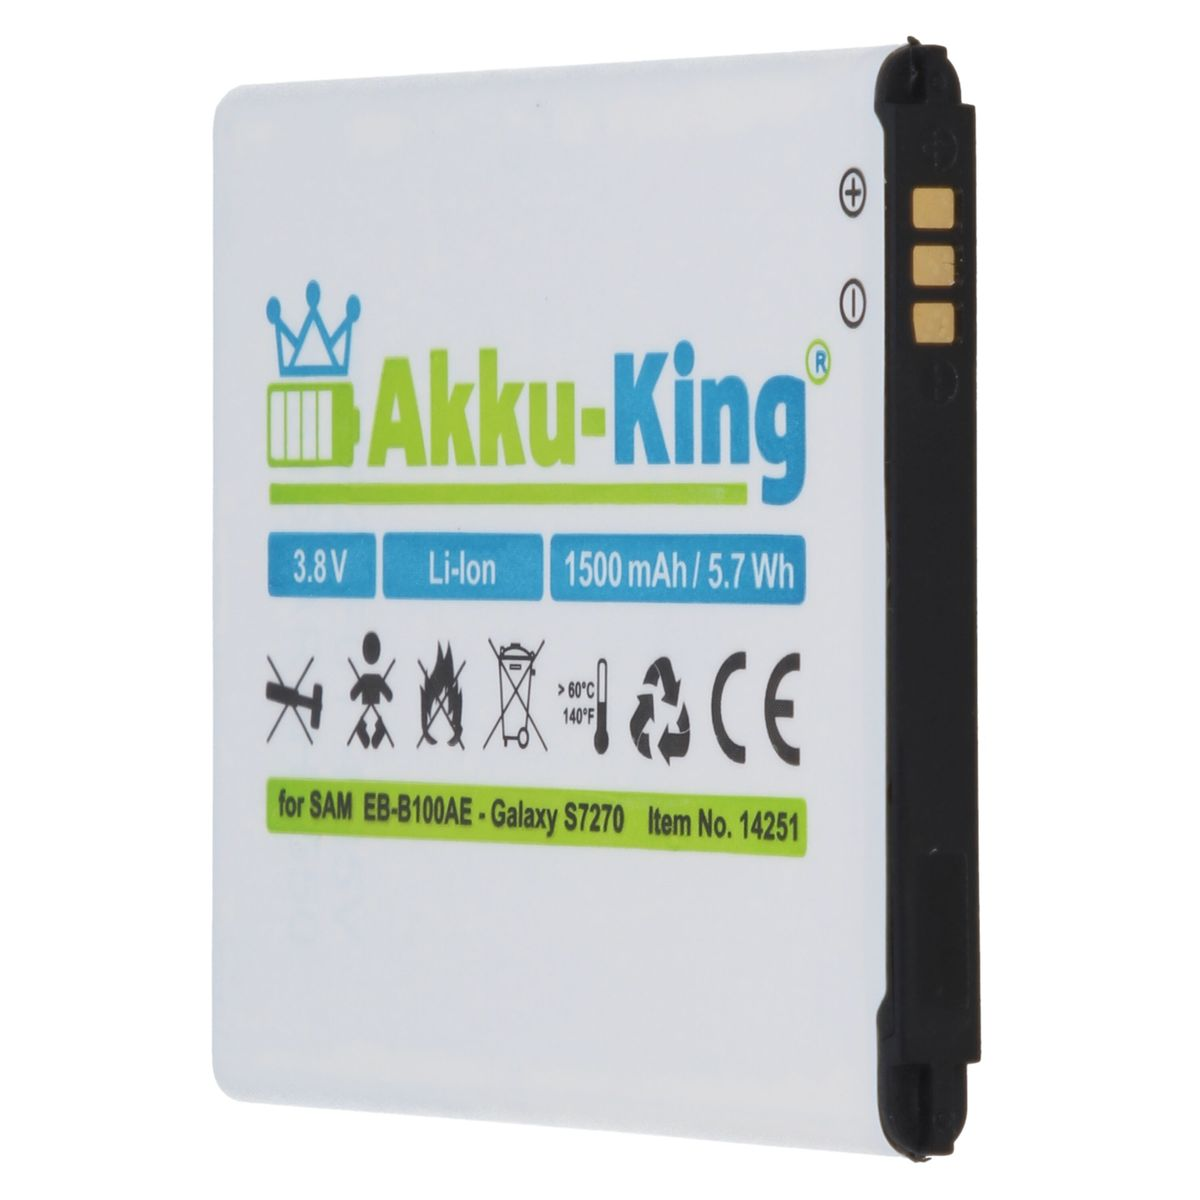 AKKU-KING Akku kompatibel mit Volt, 1500mAh Li-Ion Samsung Handy-Akku, EB-B100AE 3.8